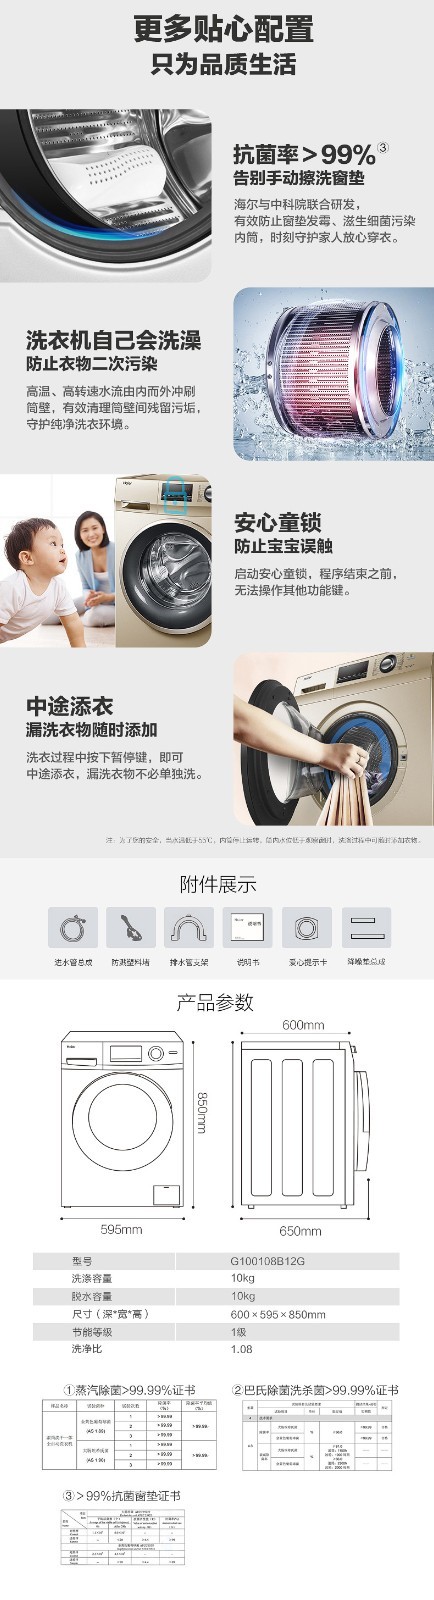 海尔家用滚筒洗衣机G100108B12G功能介绍